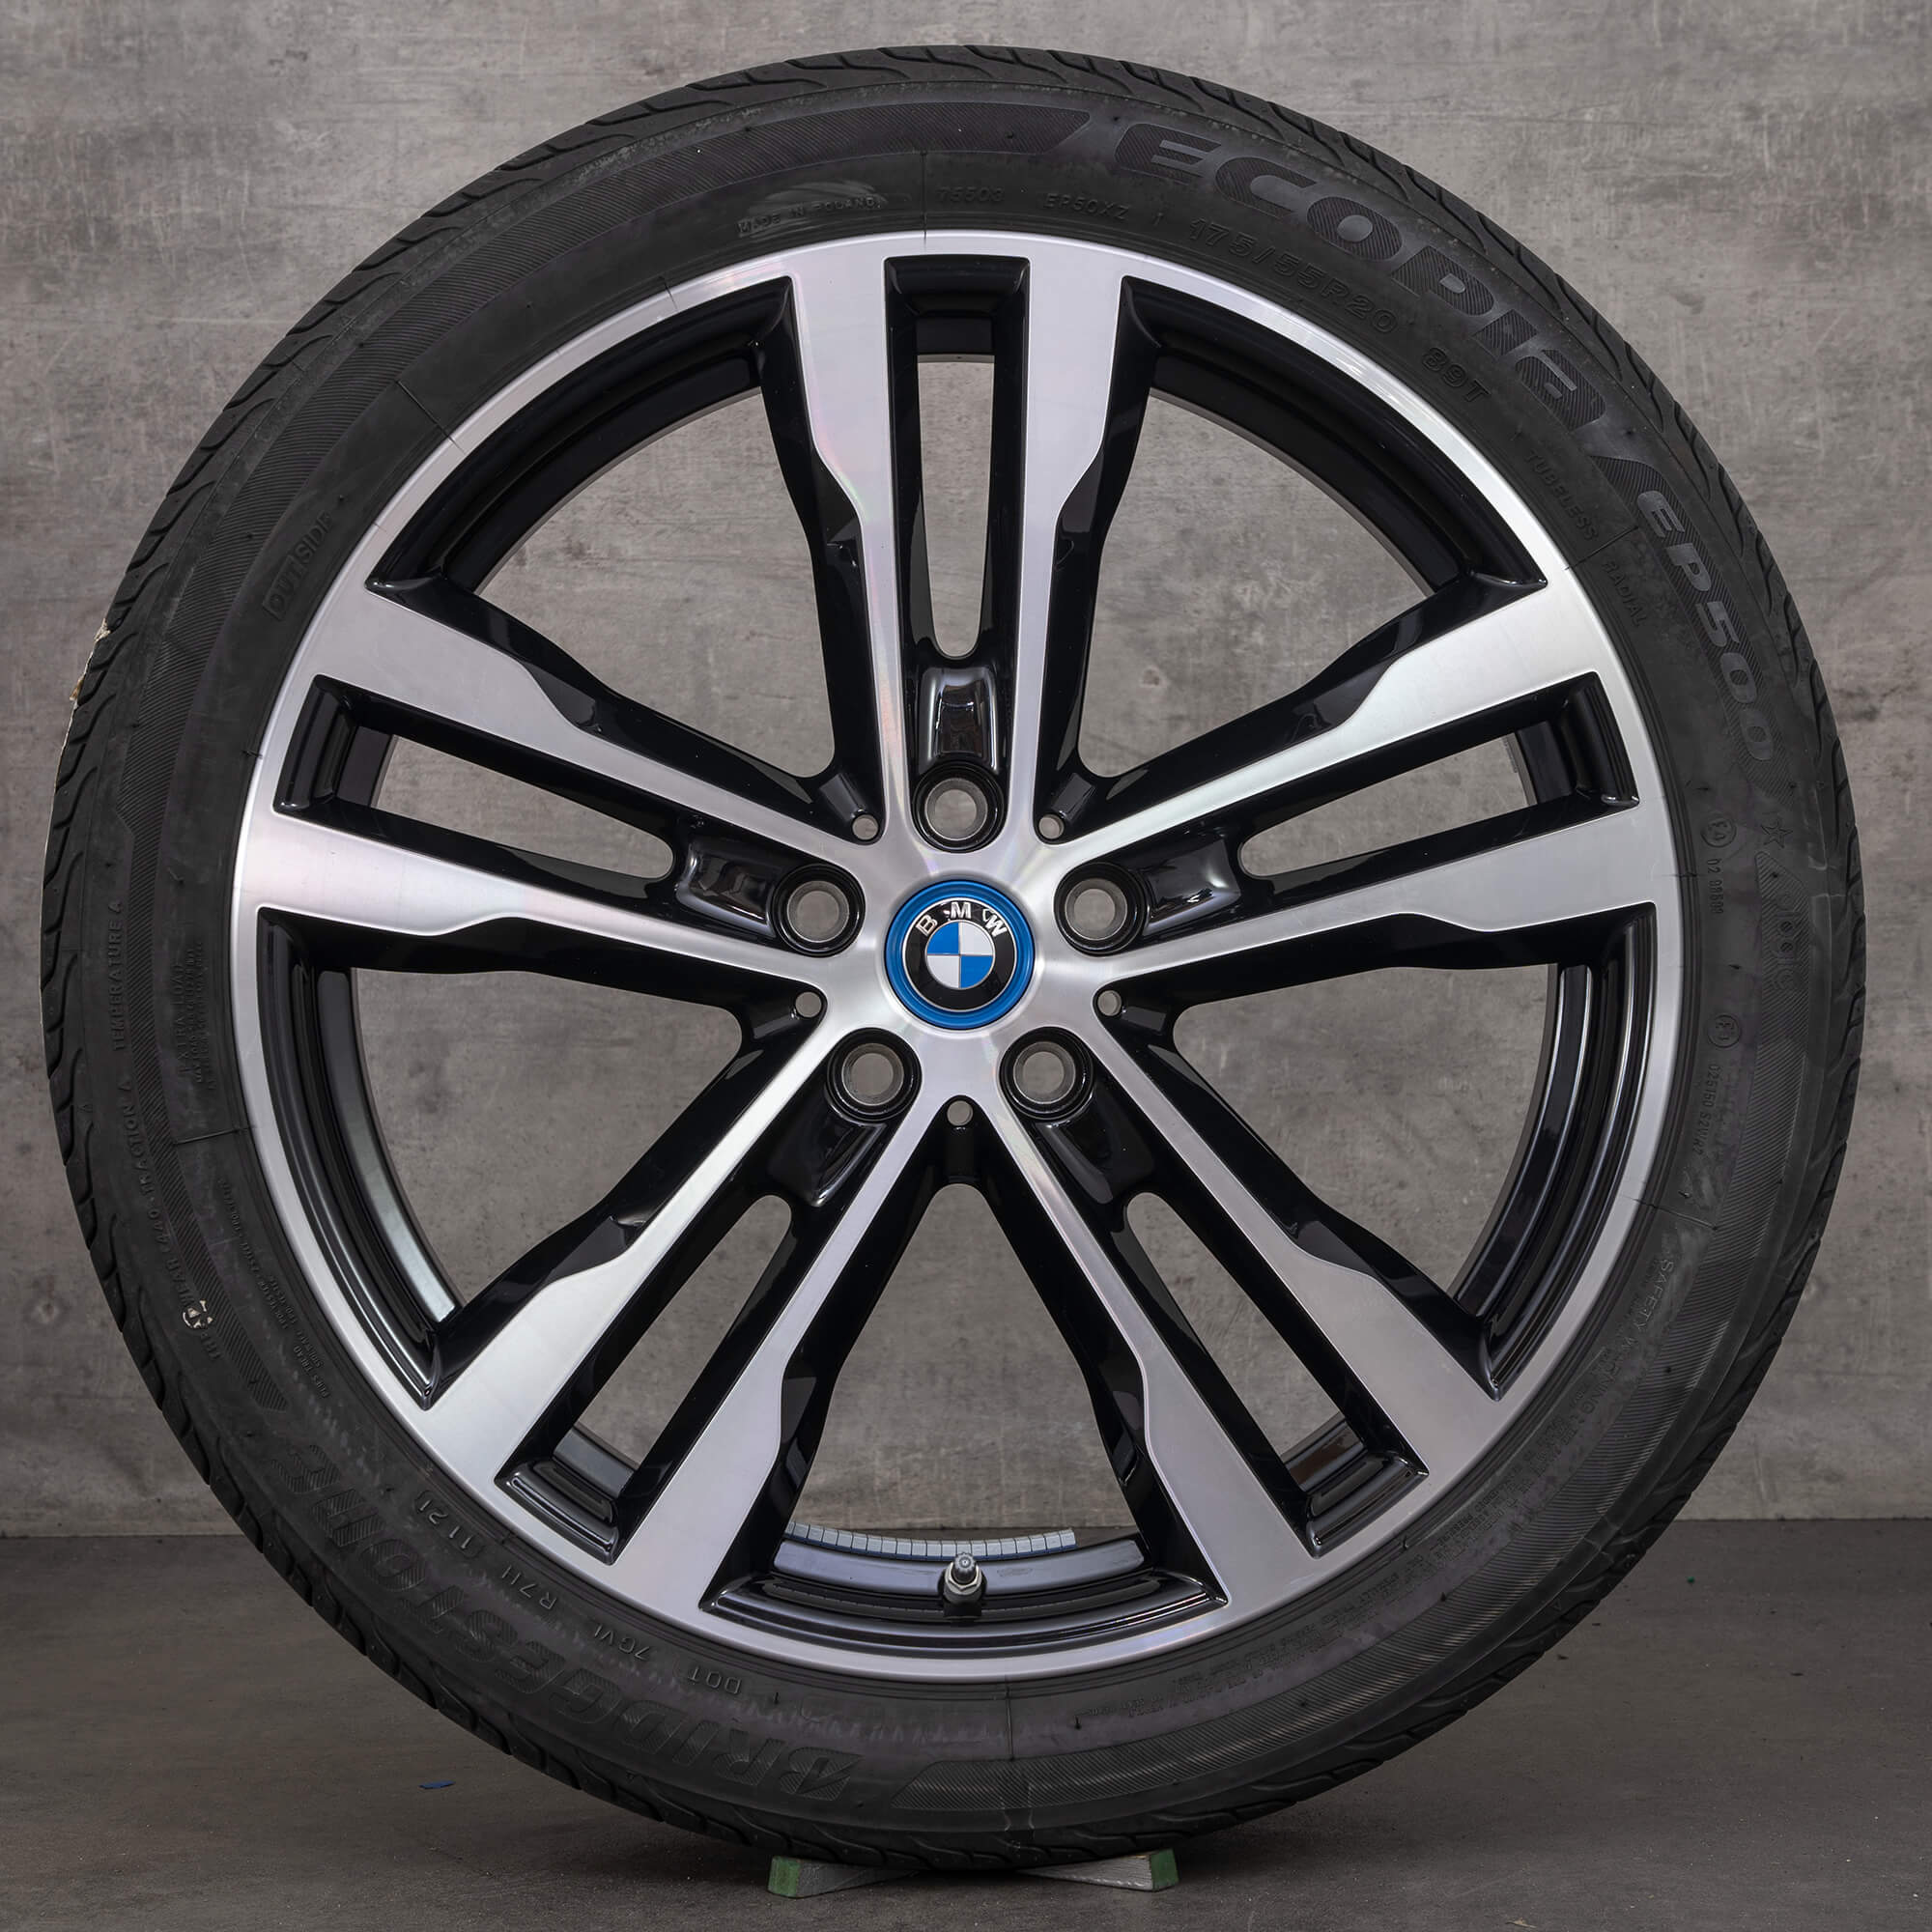 Llantas BMW 20 pulgadas i-models i3s I01 neumáticos de verano ruedas 6 mm